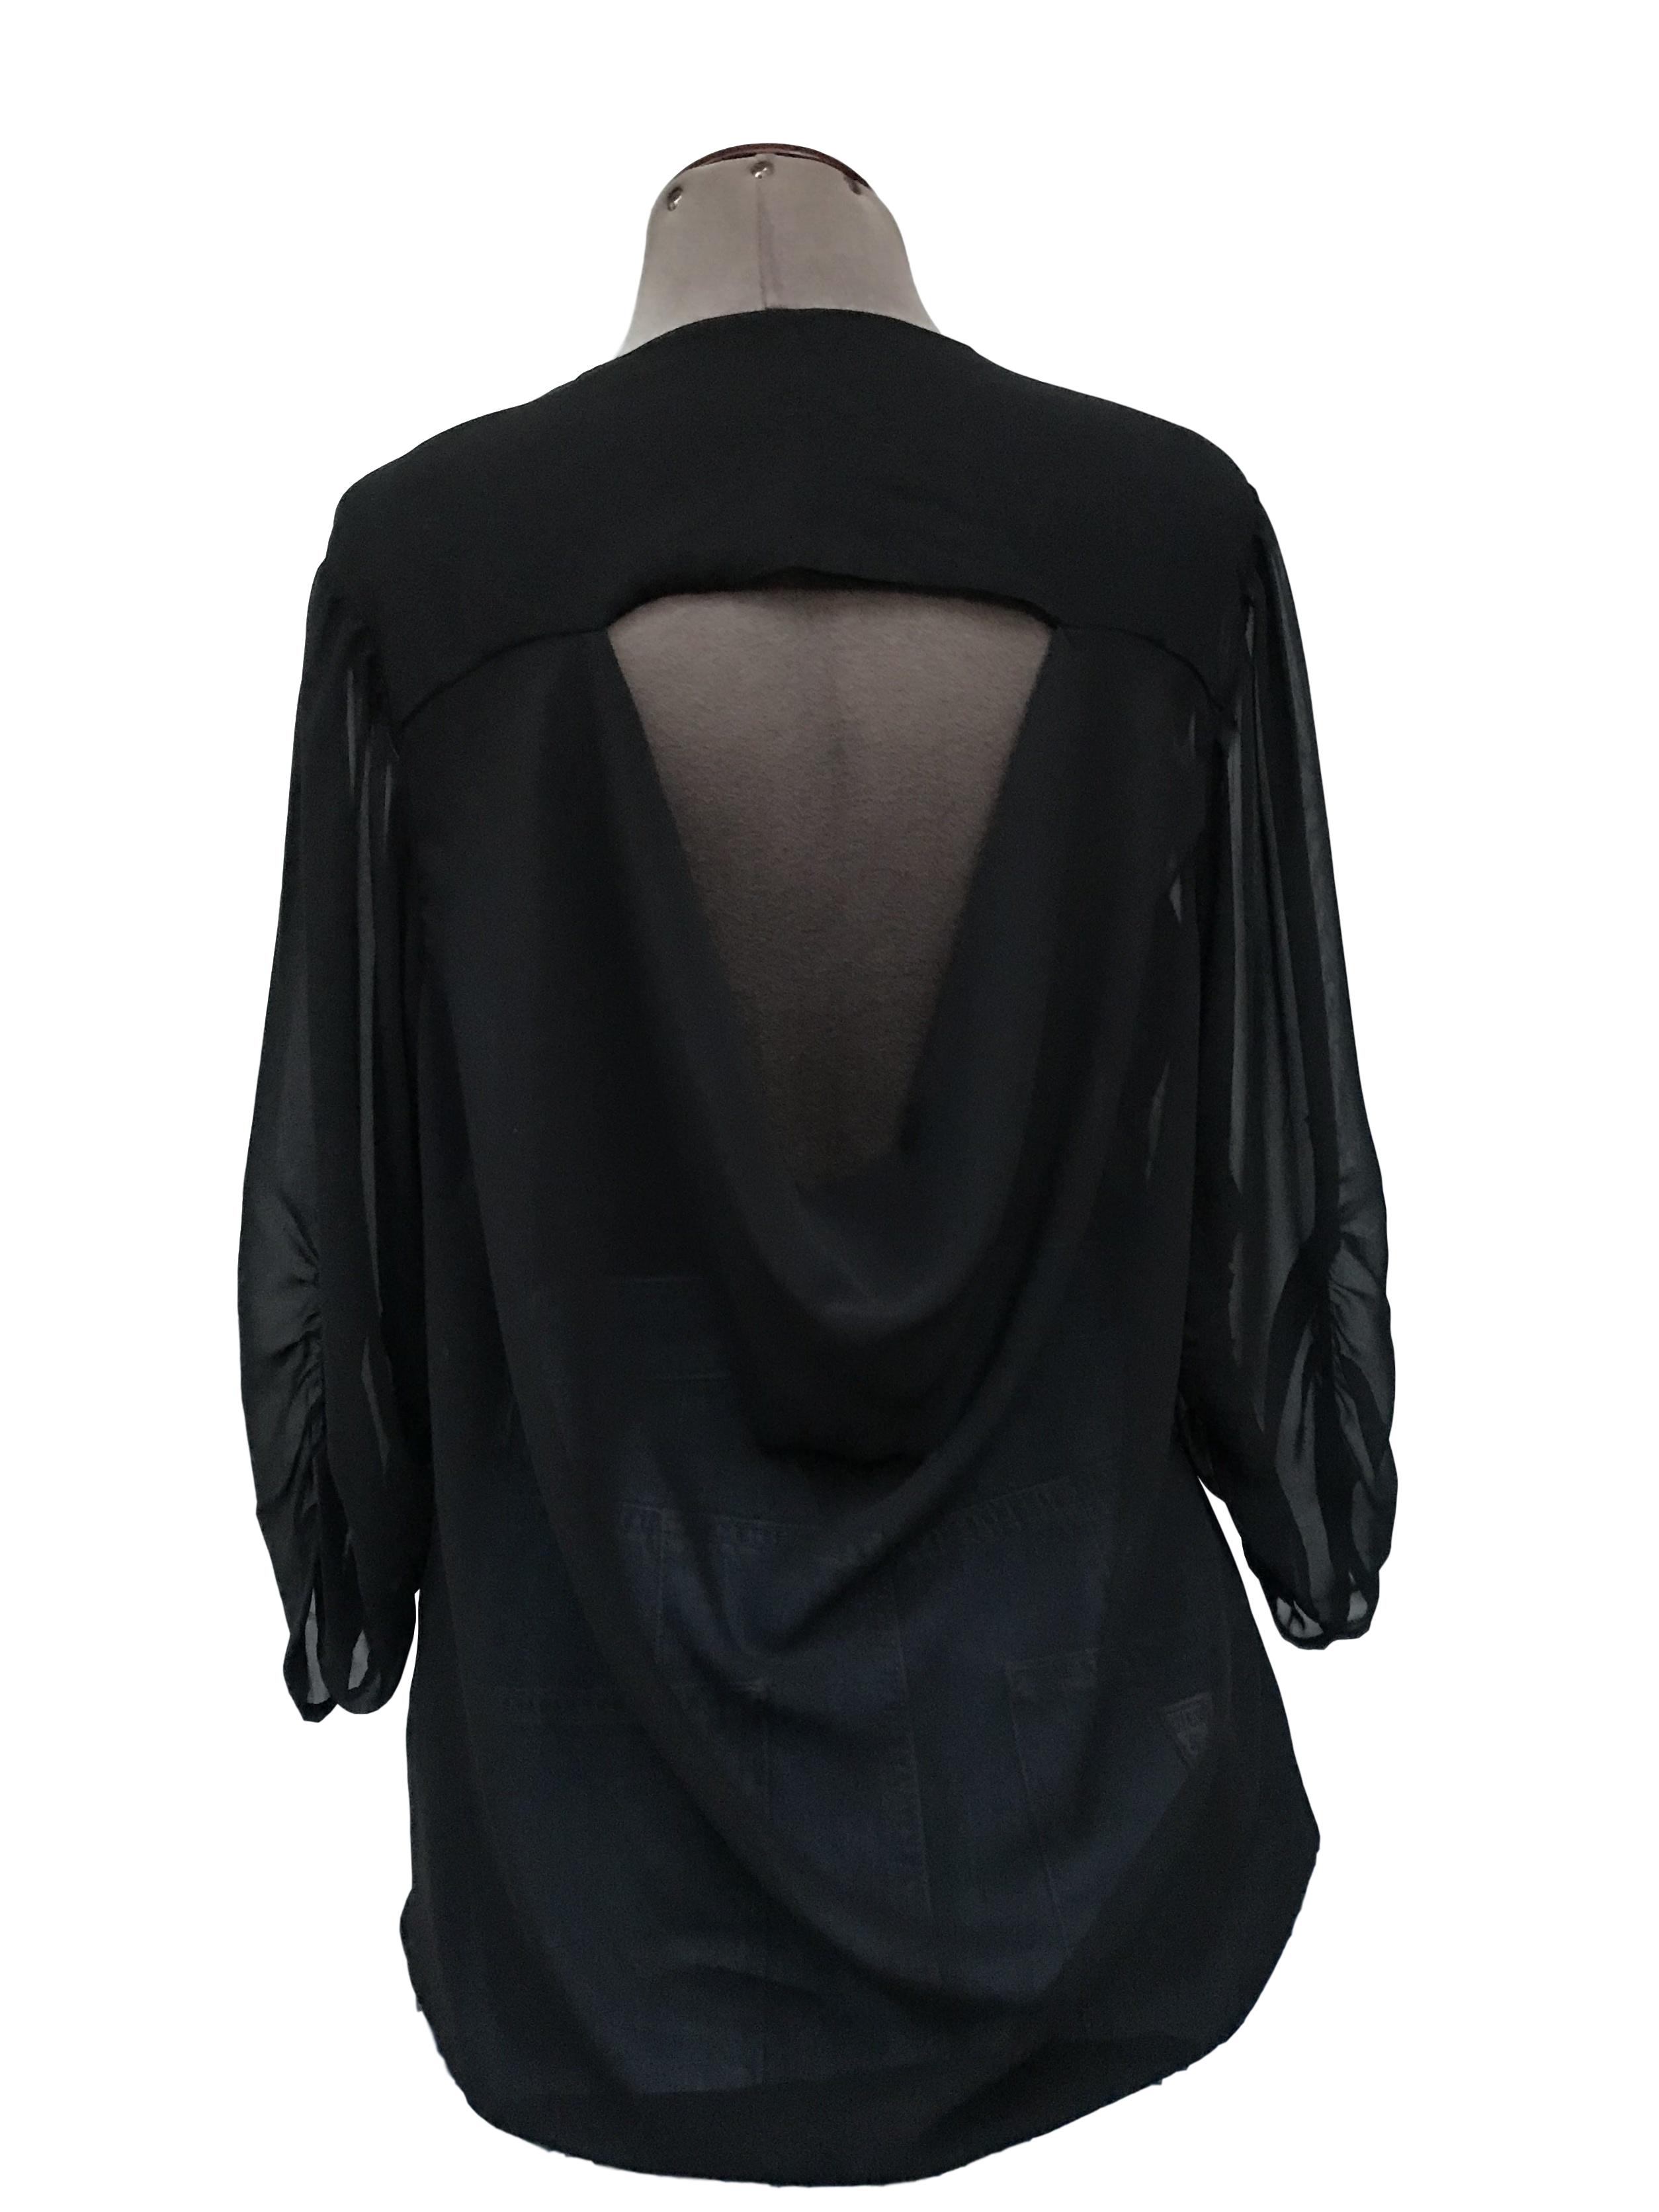 Blusa de gasa negra, doble capa de tela delantera, escote caído posterior, mangas 3/4 drapeadas
Talla S